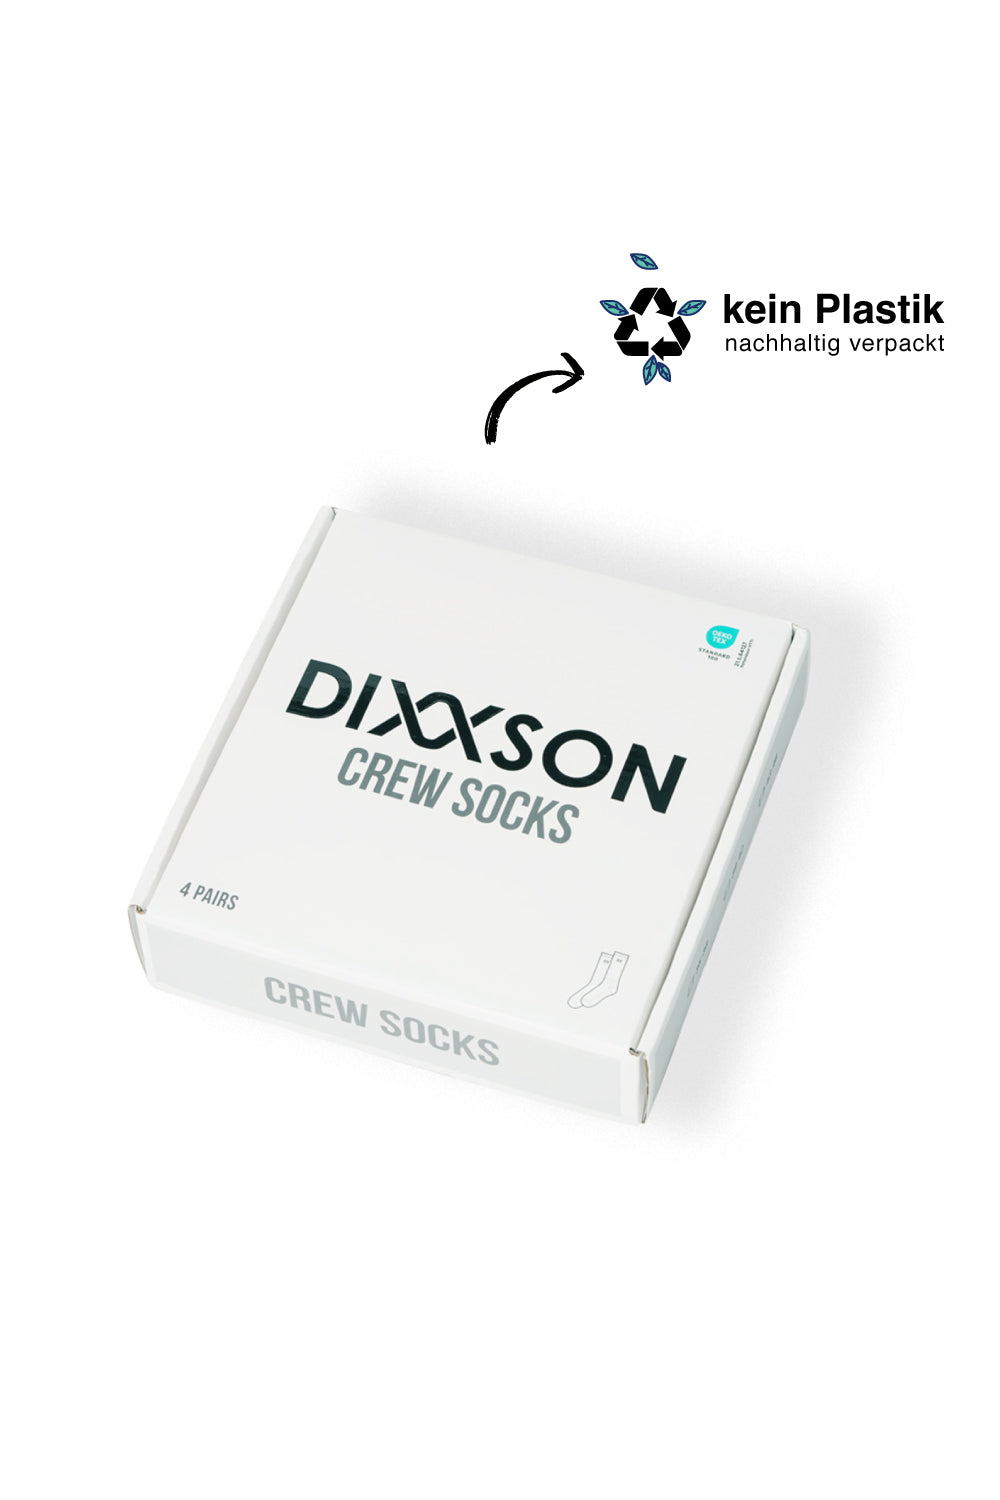 DIXXSON Crew Tennis Socken - umweltfreundliche Verpackung - Unisex für Damen und Herren - Bio-Baumwolle 